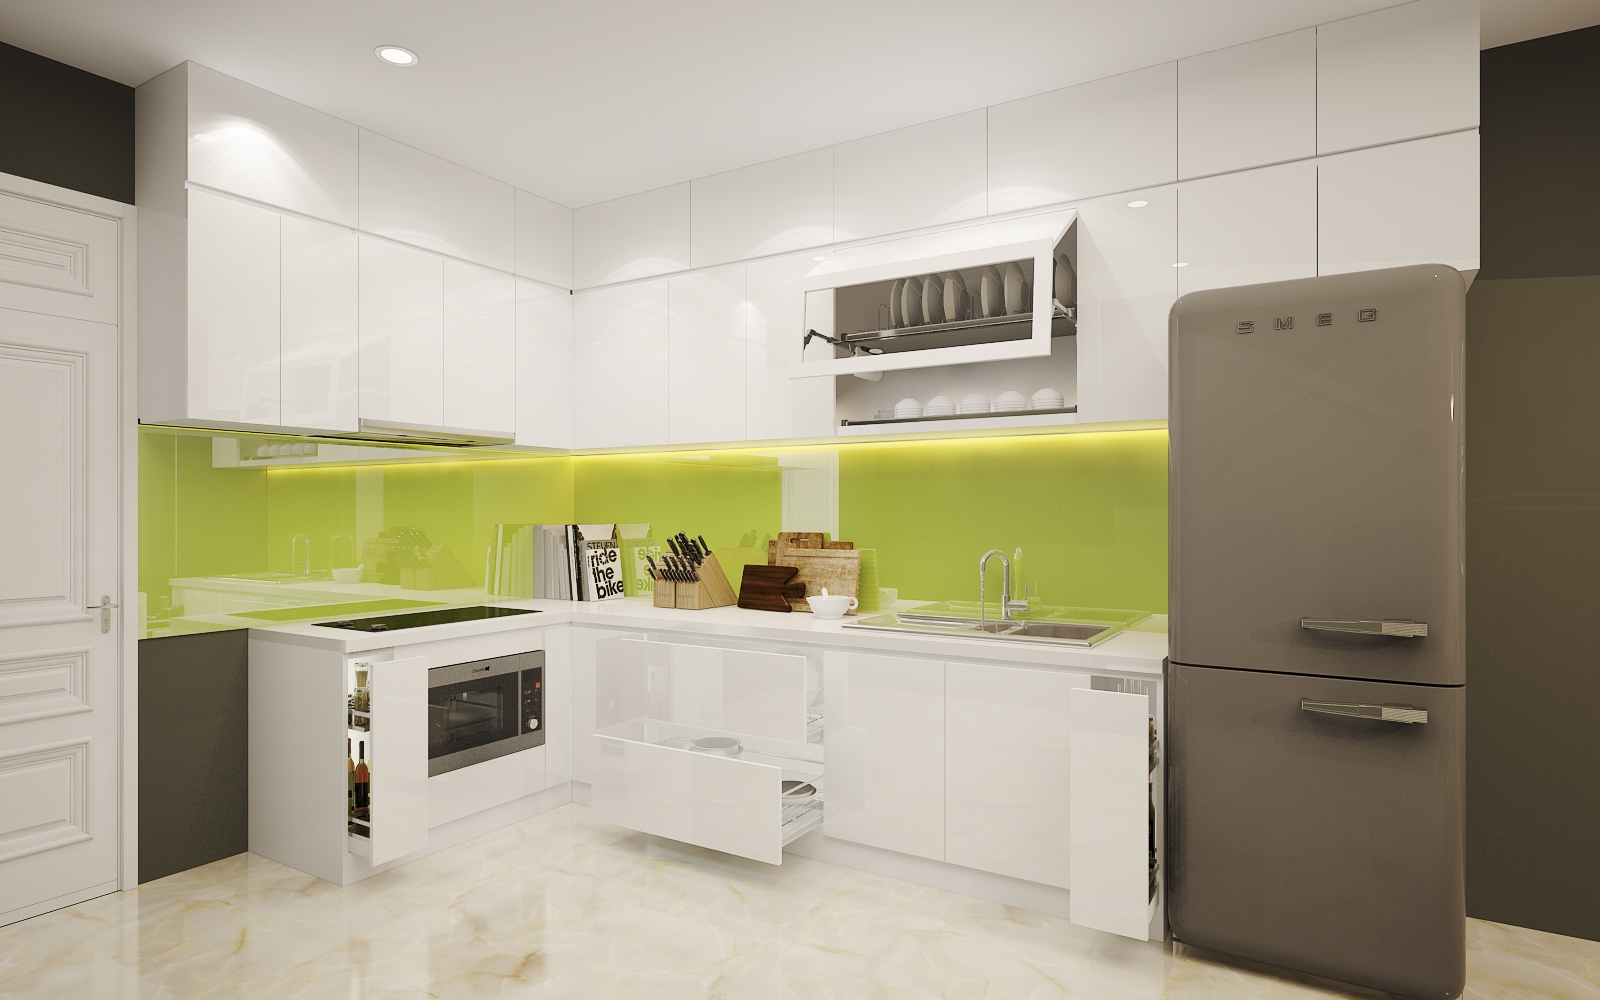 Ý nghĩa tủ bếp thông minh Acrylic với không gian bếp hiện đại